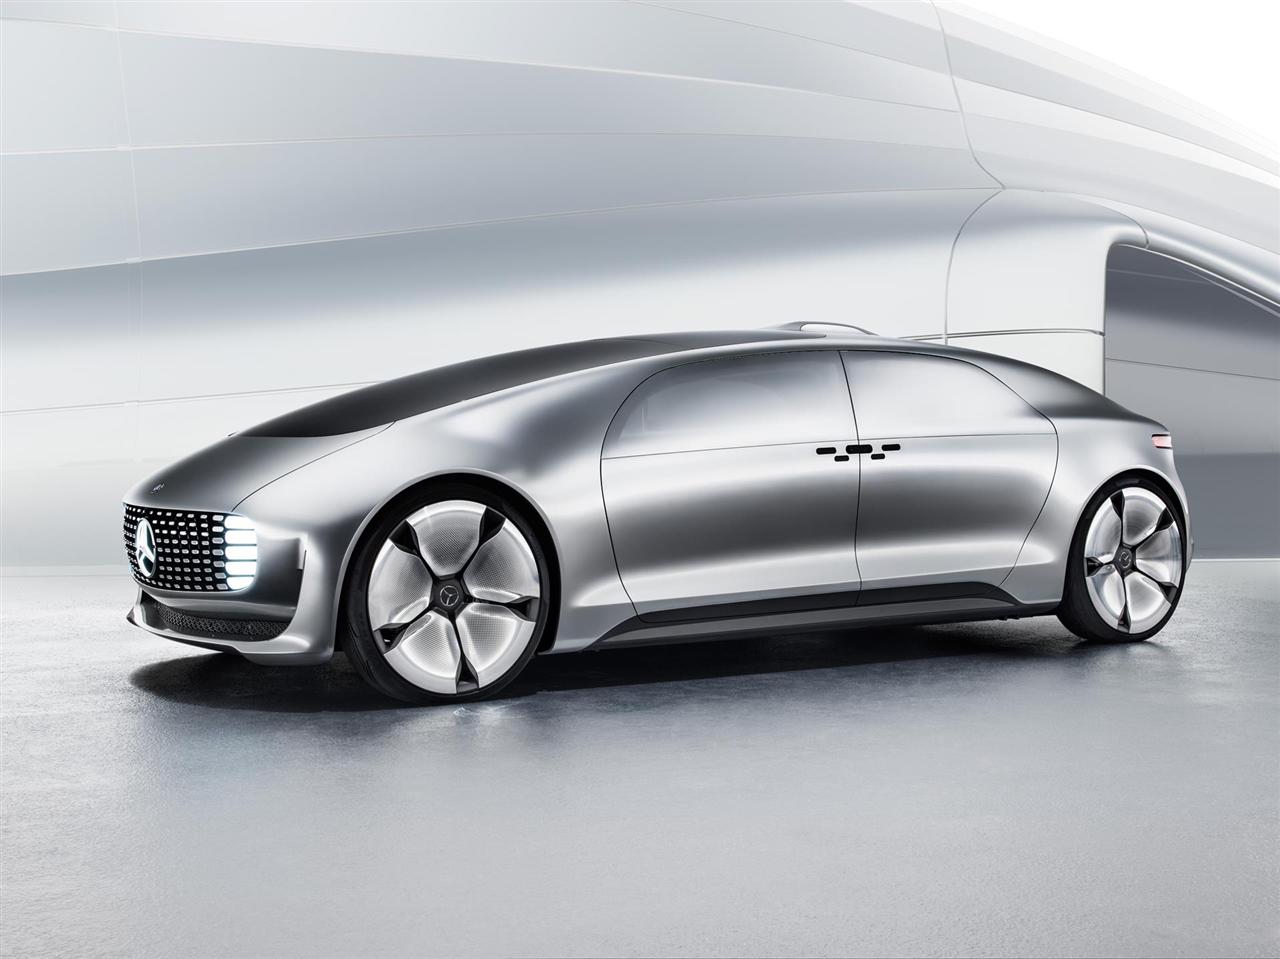 Mercedes-Benz F 015 Autonomous Concept Car - DuJour